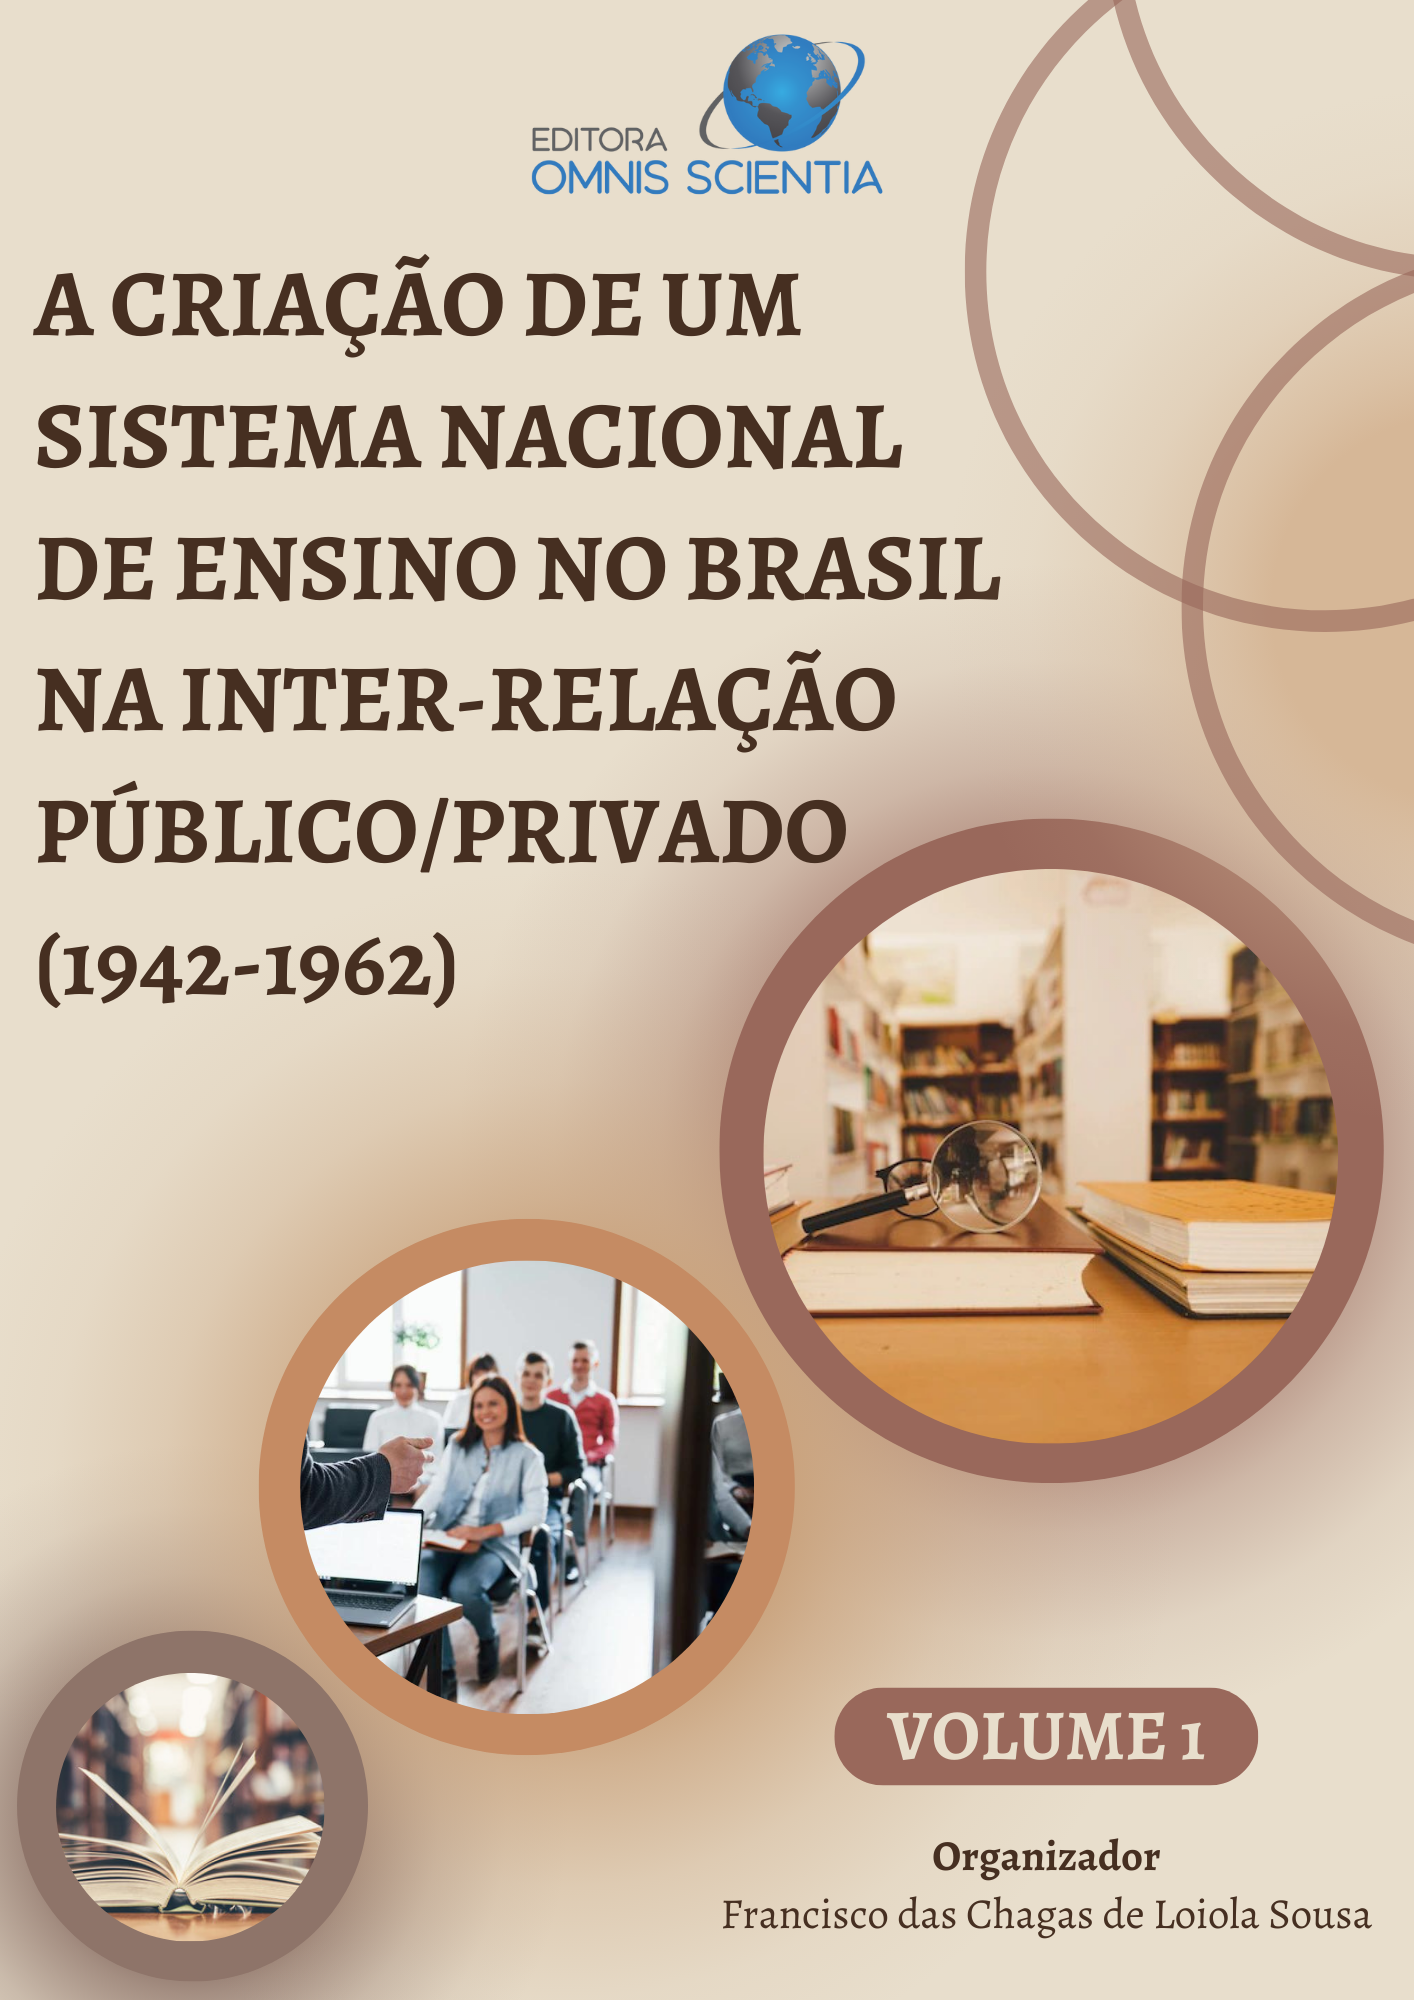 A CRIAÇÃO DE UM SISTEMA NACIONAL DE ENSINO NO BRASIL NA INTERRELAÇÃO PÚBLICO/PRIVADO (1942-1962)